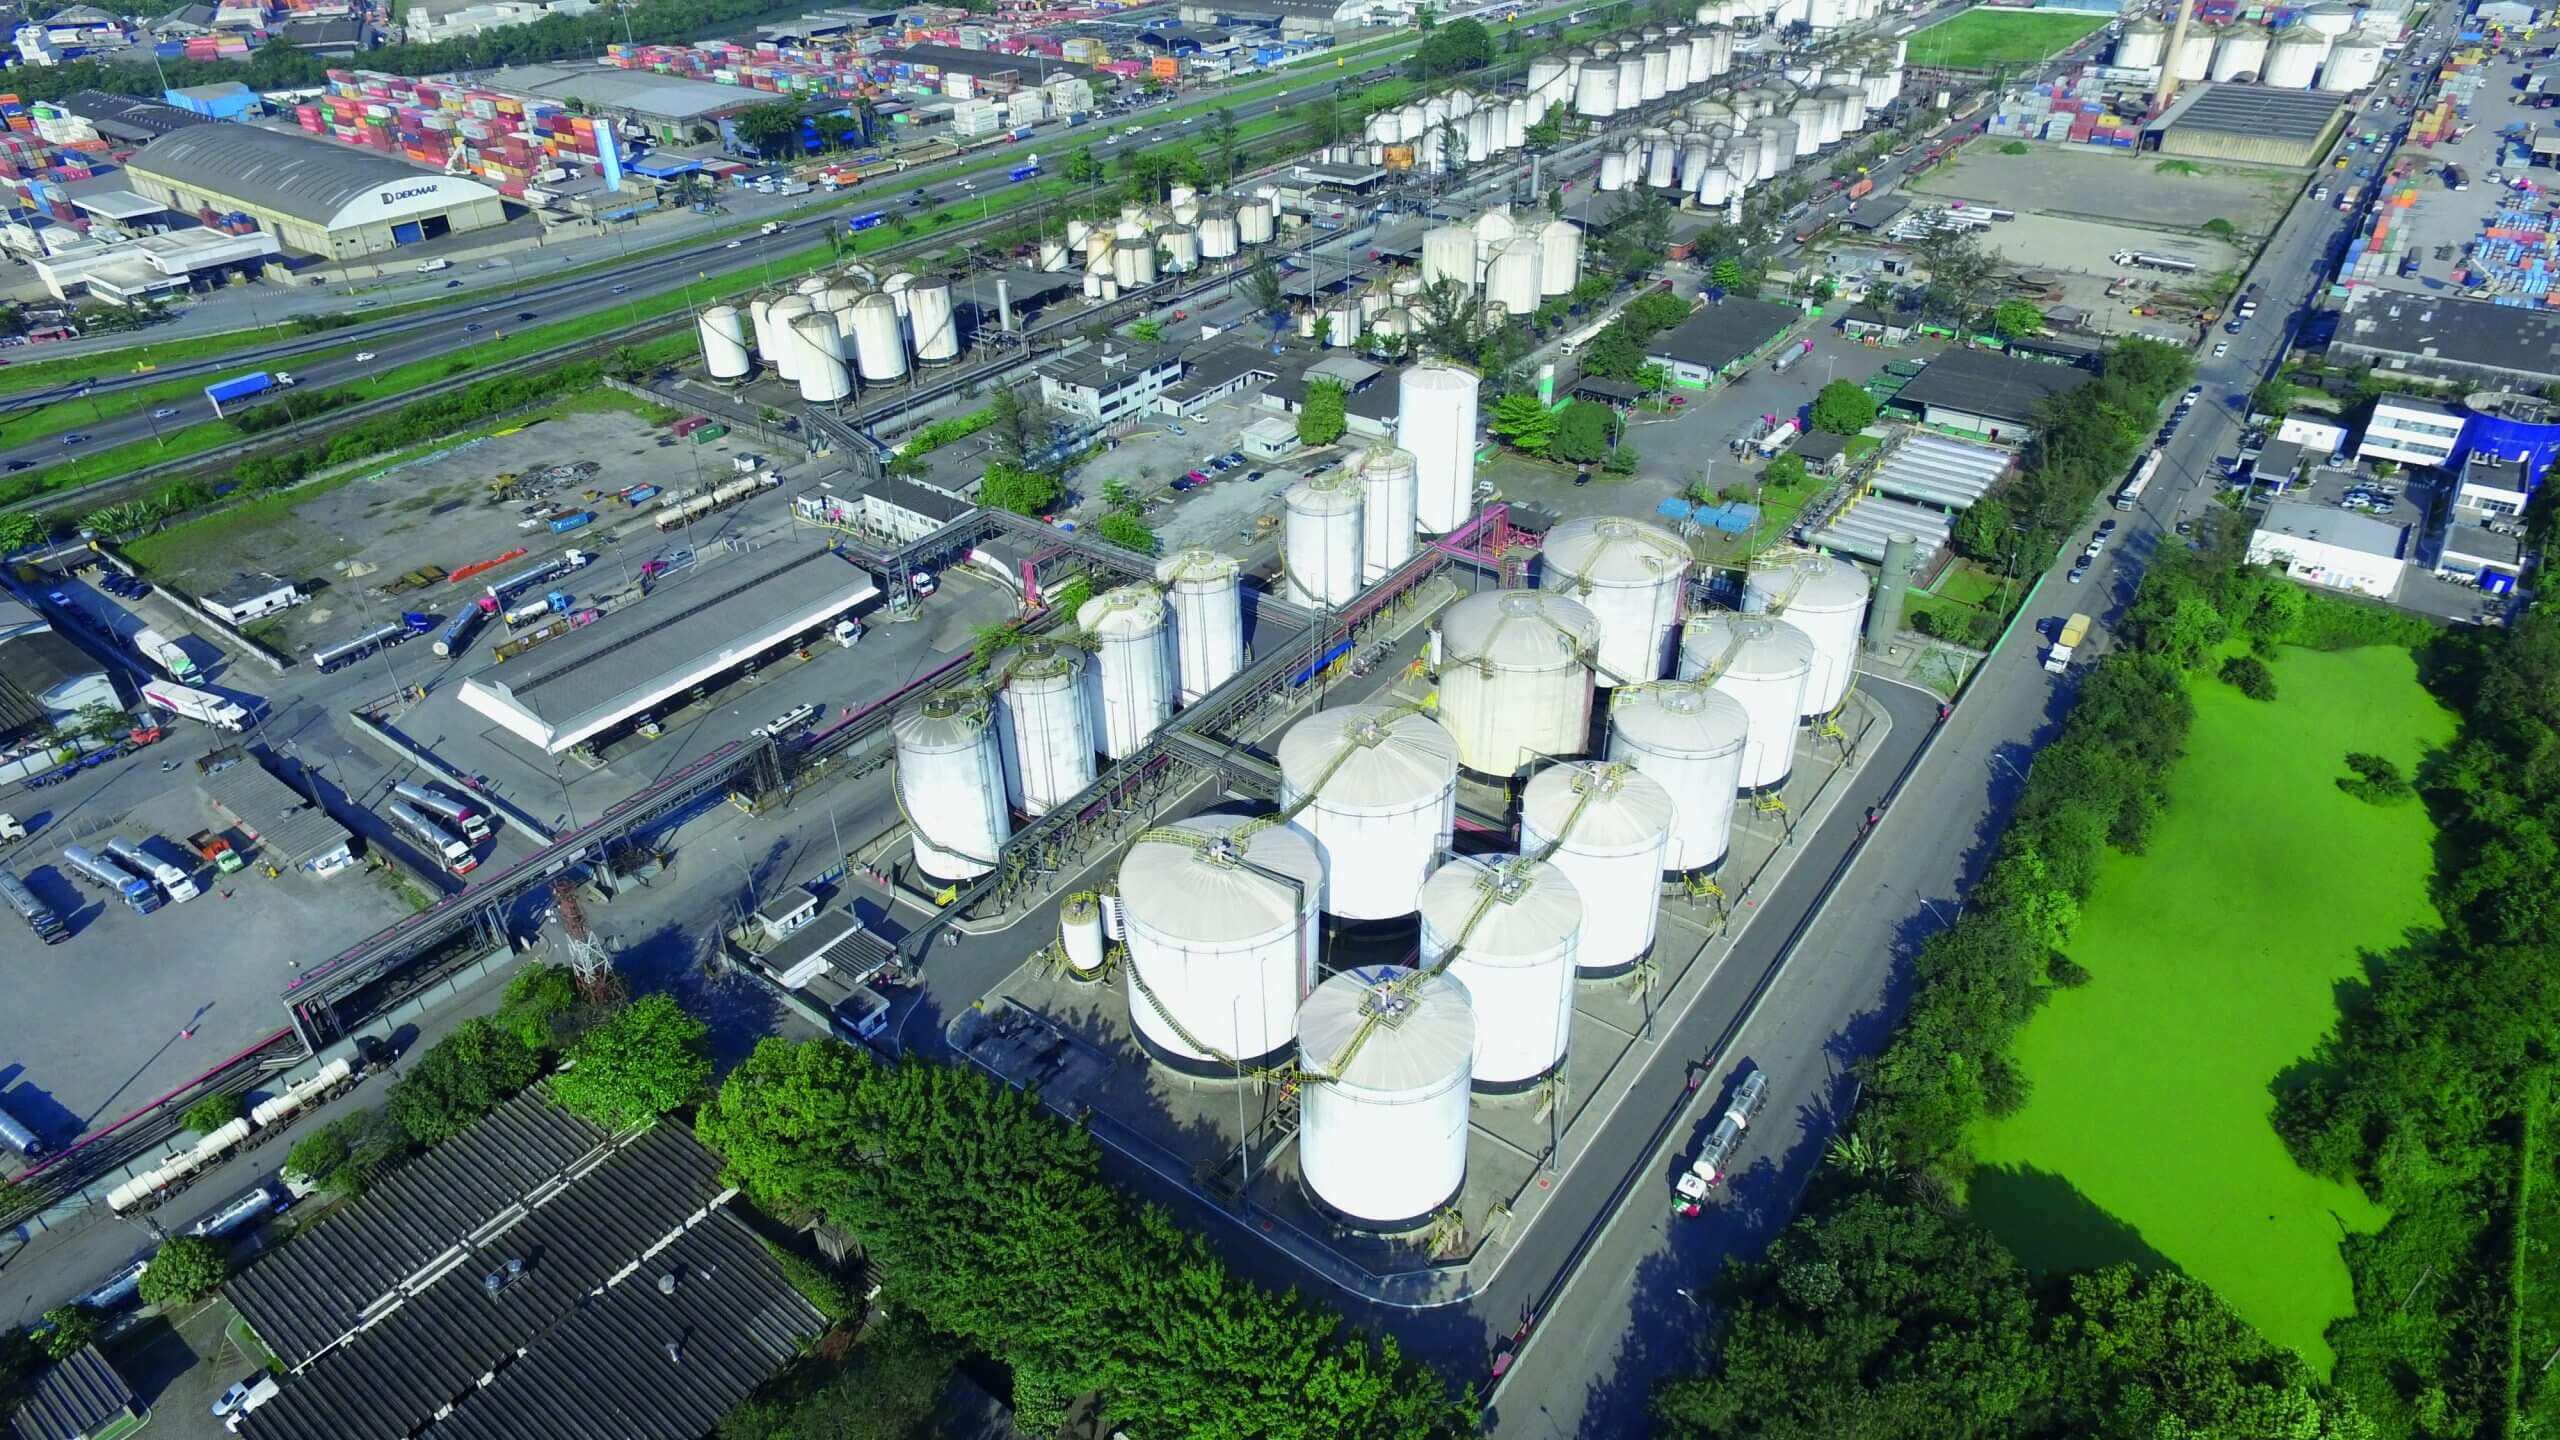 Ultracargo conclui aquisição de 50% da Opla e forma joint venture com a bp em terminal de etanol. Na imagem: Terminal da Ultracargo em Santos, SP (Foto: Divulgação)